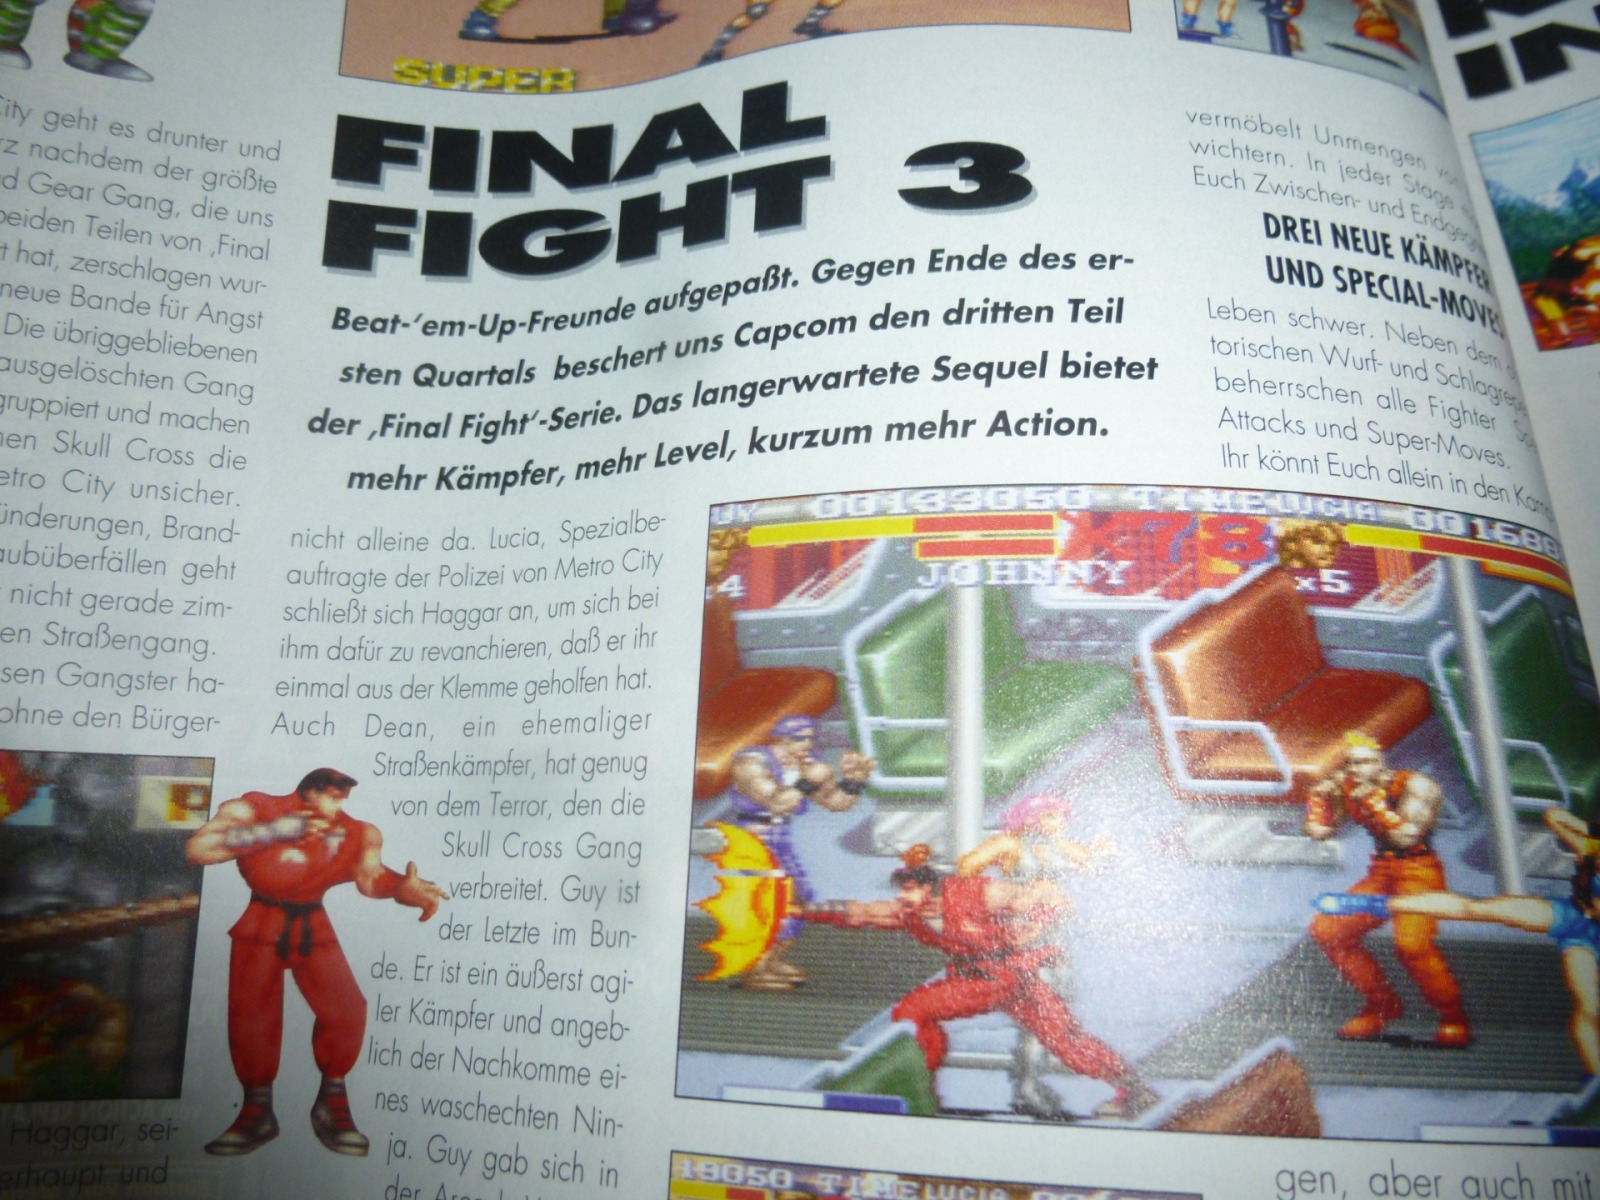 TOTAL Das unabhängige Magazin - 100 Nintendo - Ausgabe 3/96 1996 10